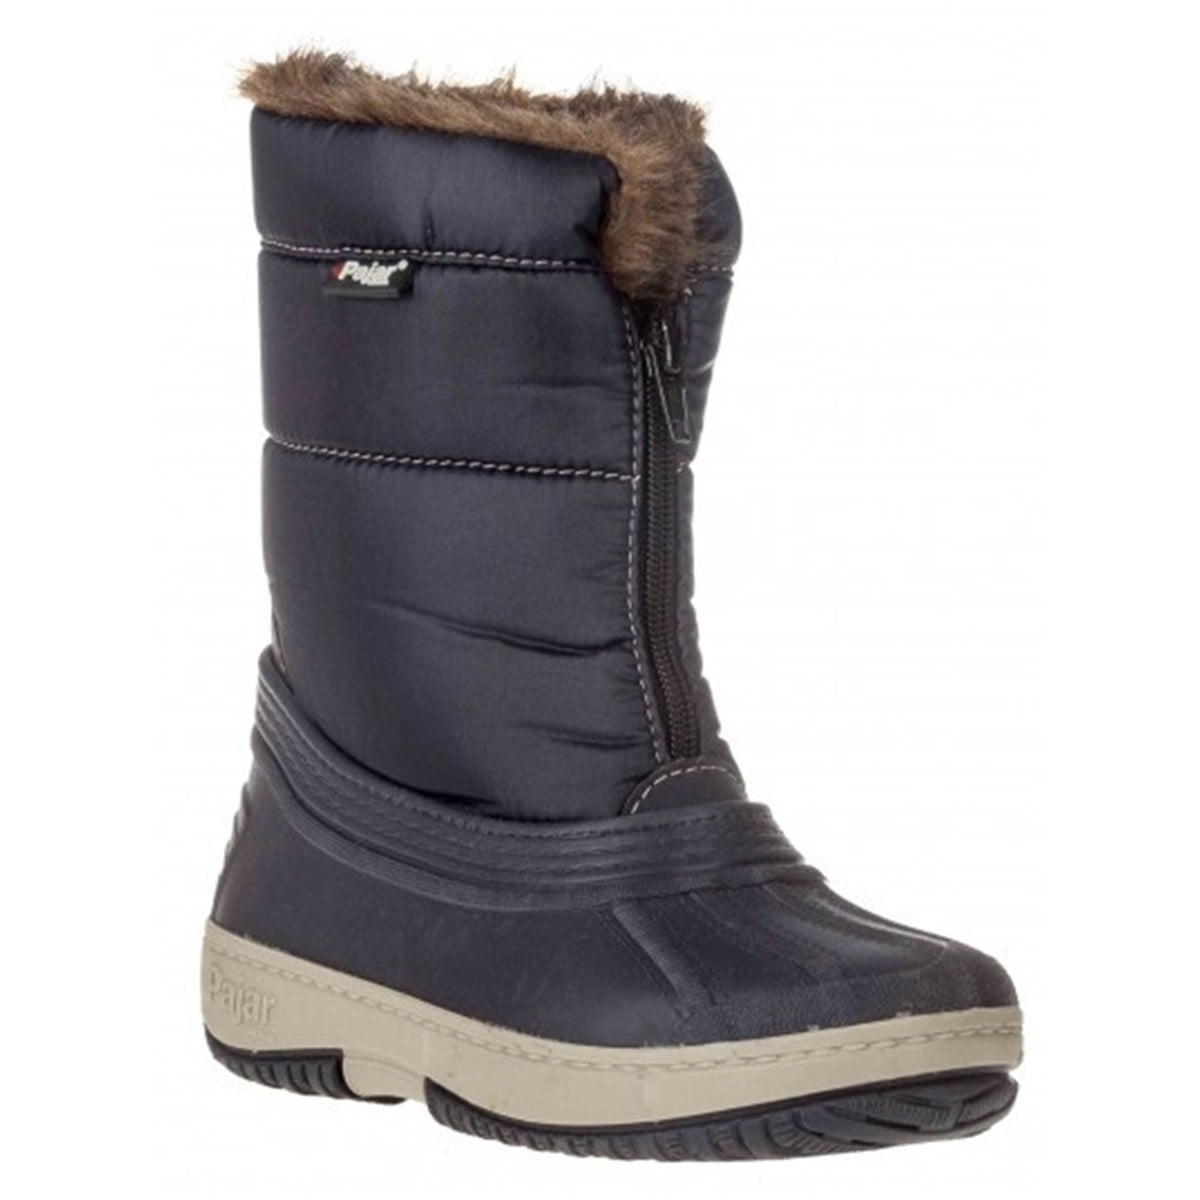 Pajar Canada - Pajar Boys Alexia Waterproof Snow Boots - Walmart.com ...